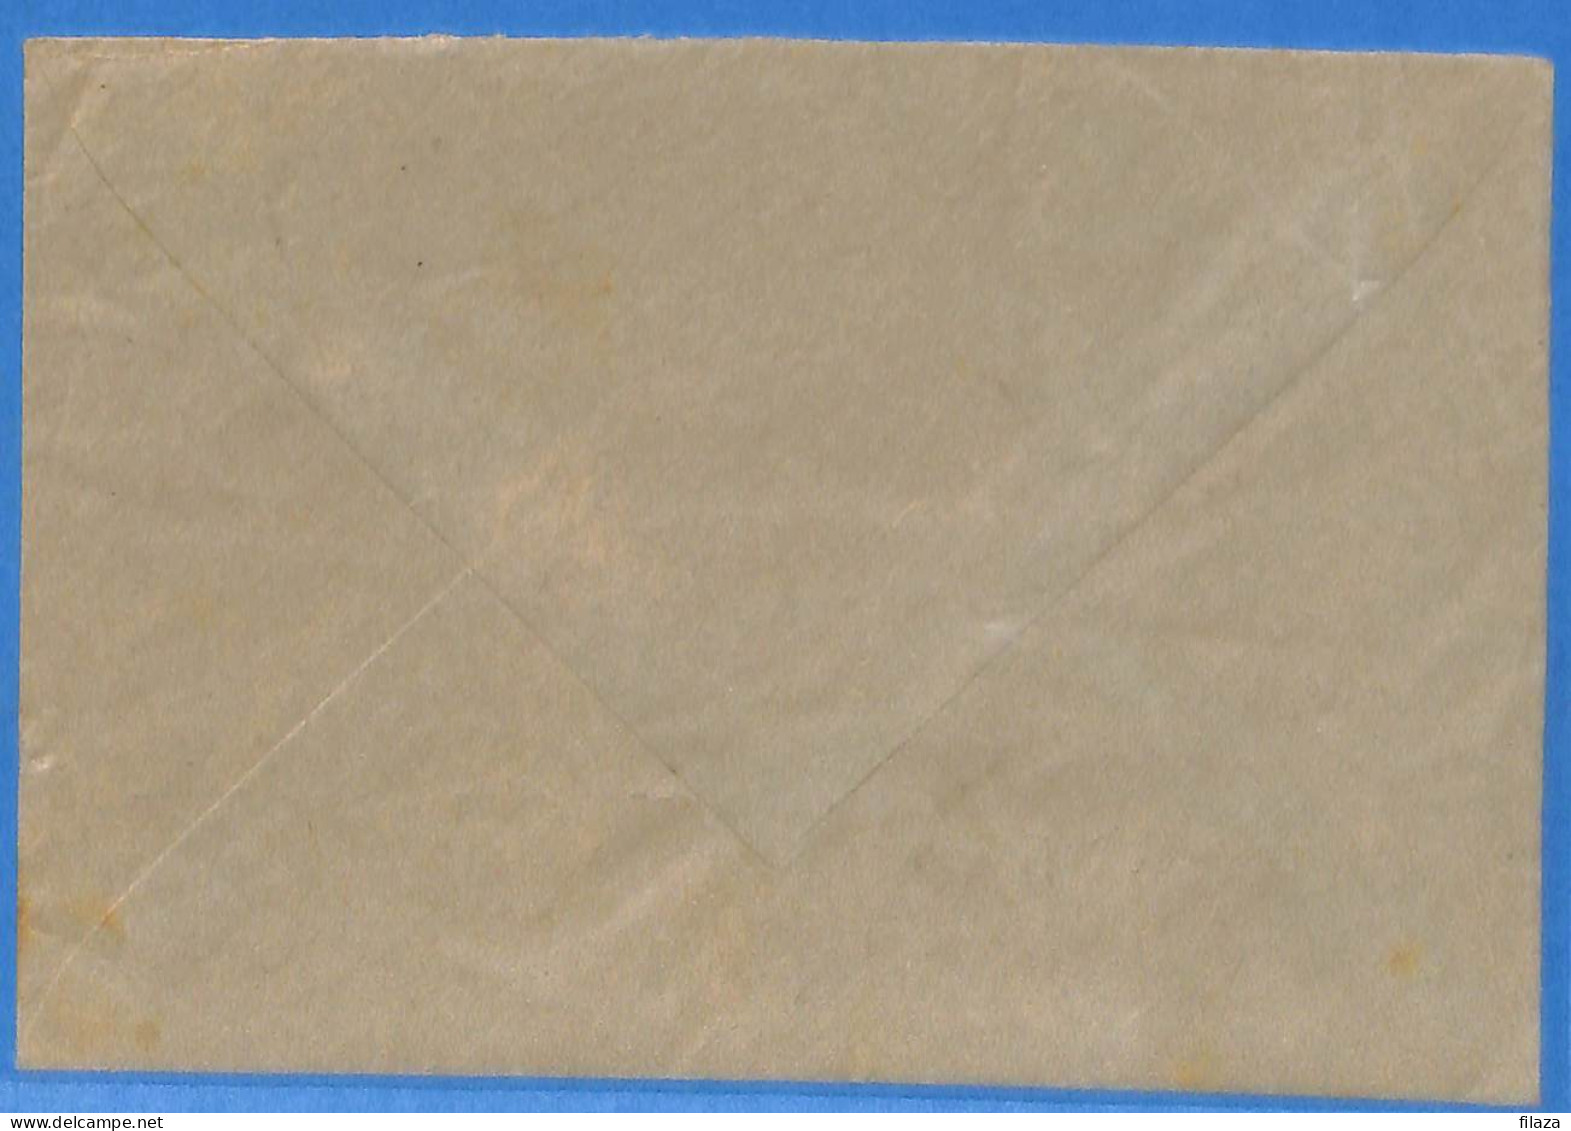 Allemagne DDR - 1955 - Lettre Durch Eilbote De Lausha - G25338 - Covers & Documents